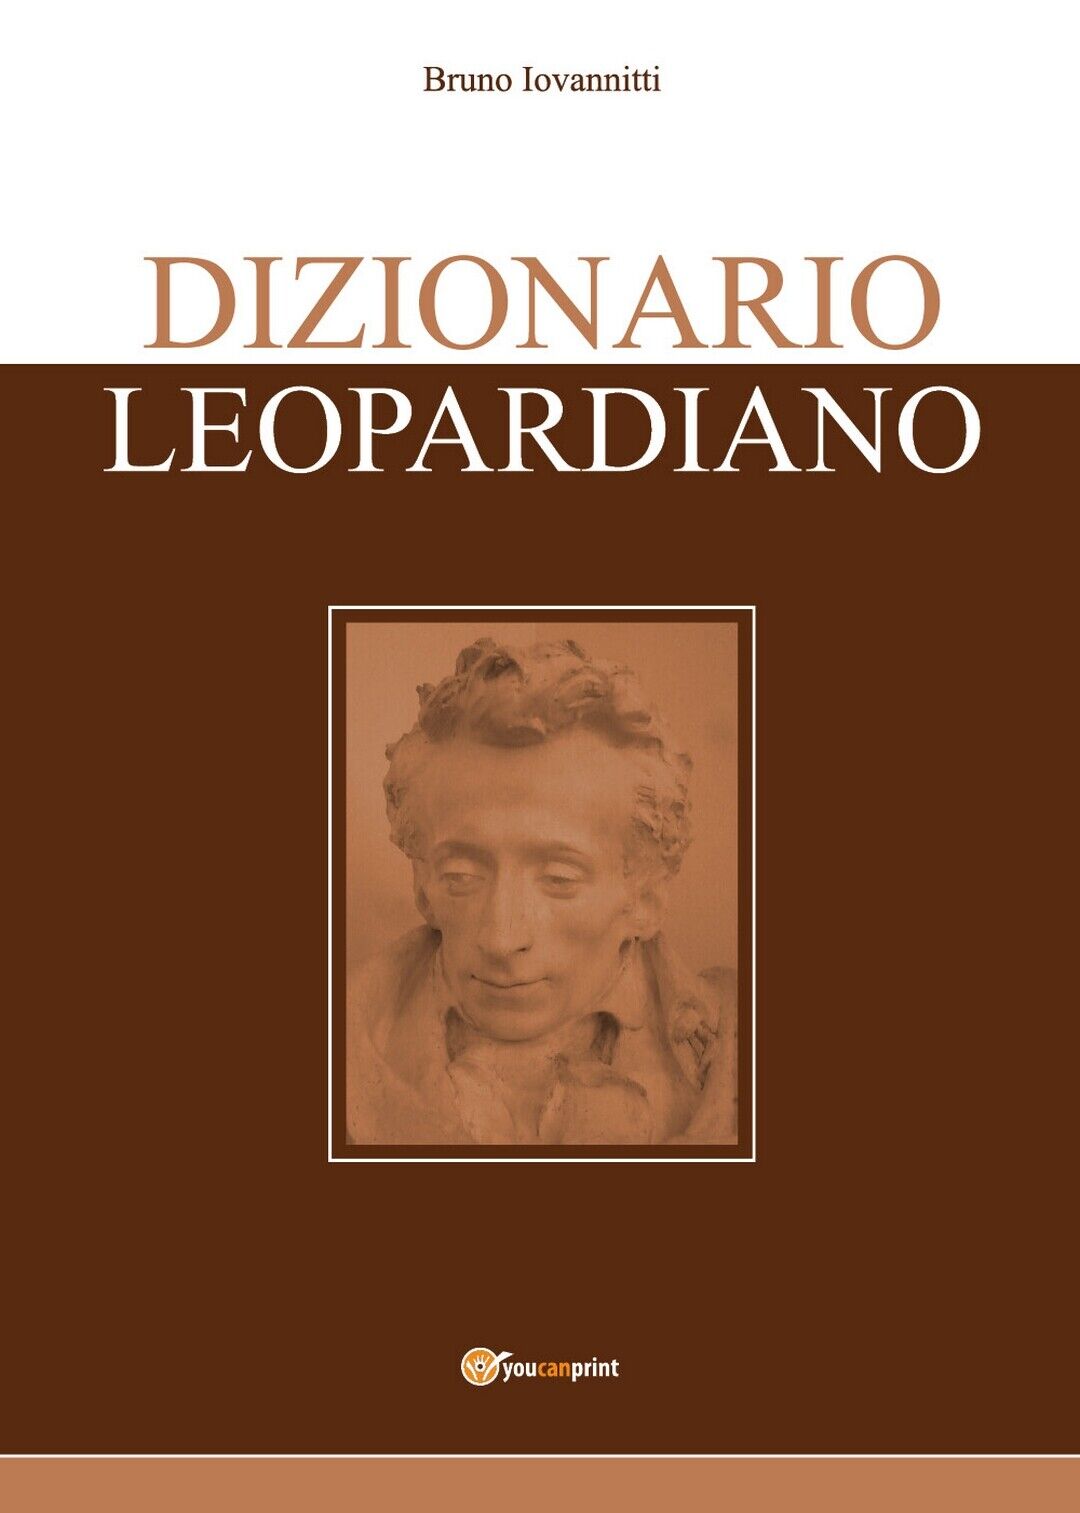 Dizionario Leopardiano  di Bruno Iovannitti,  2020,  Youcanprint